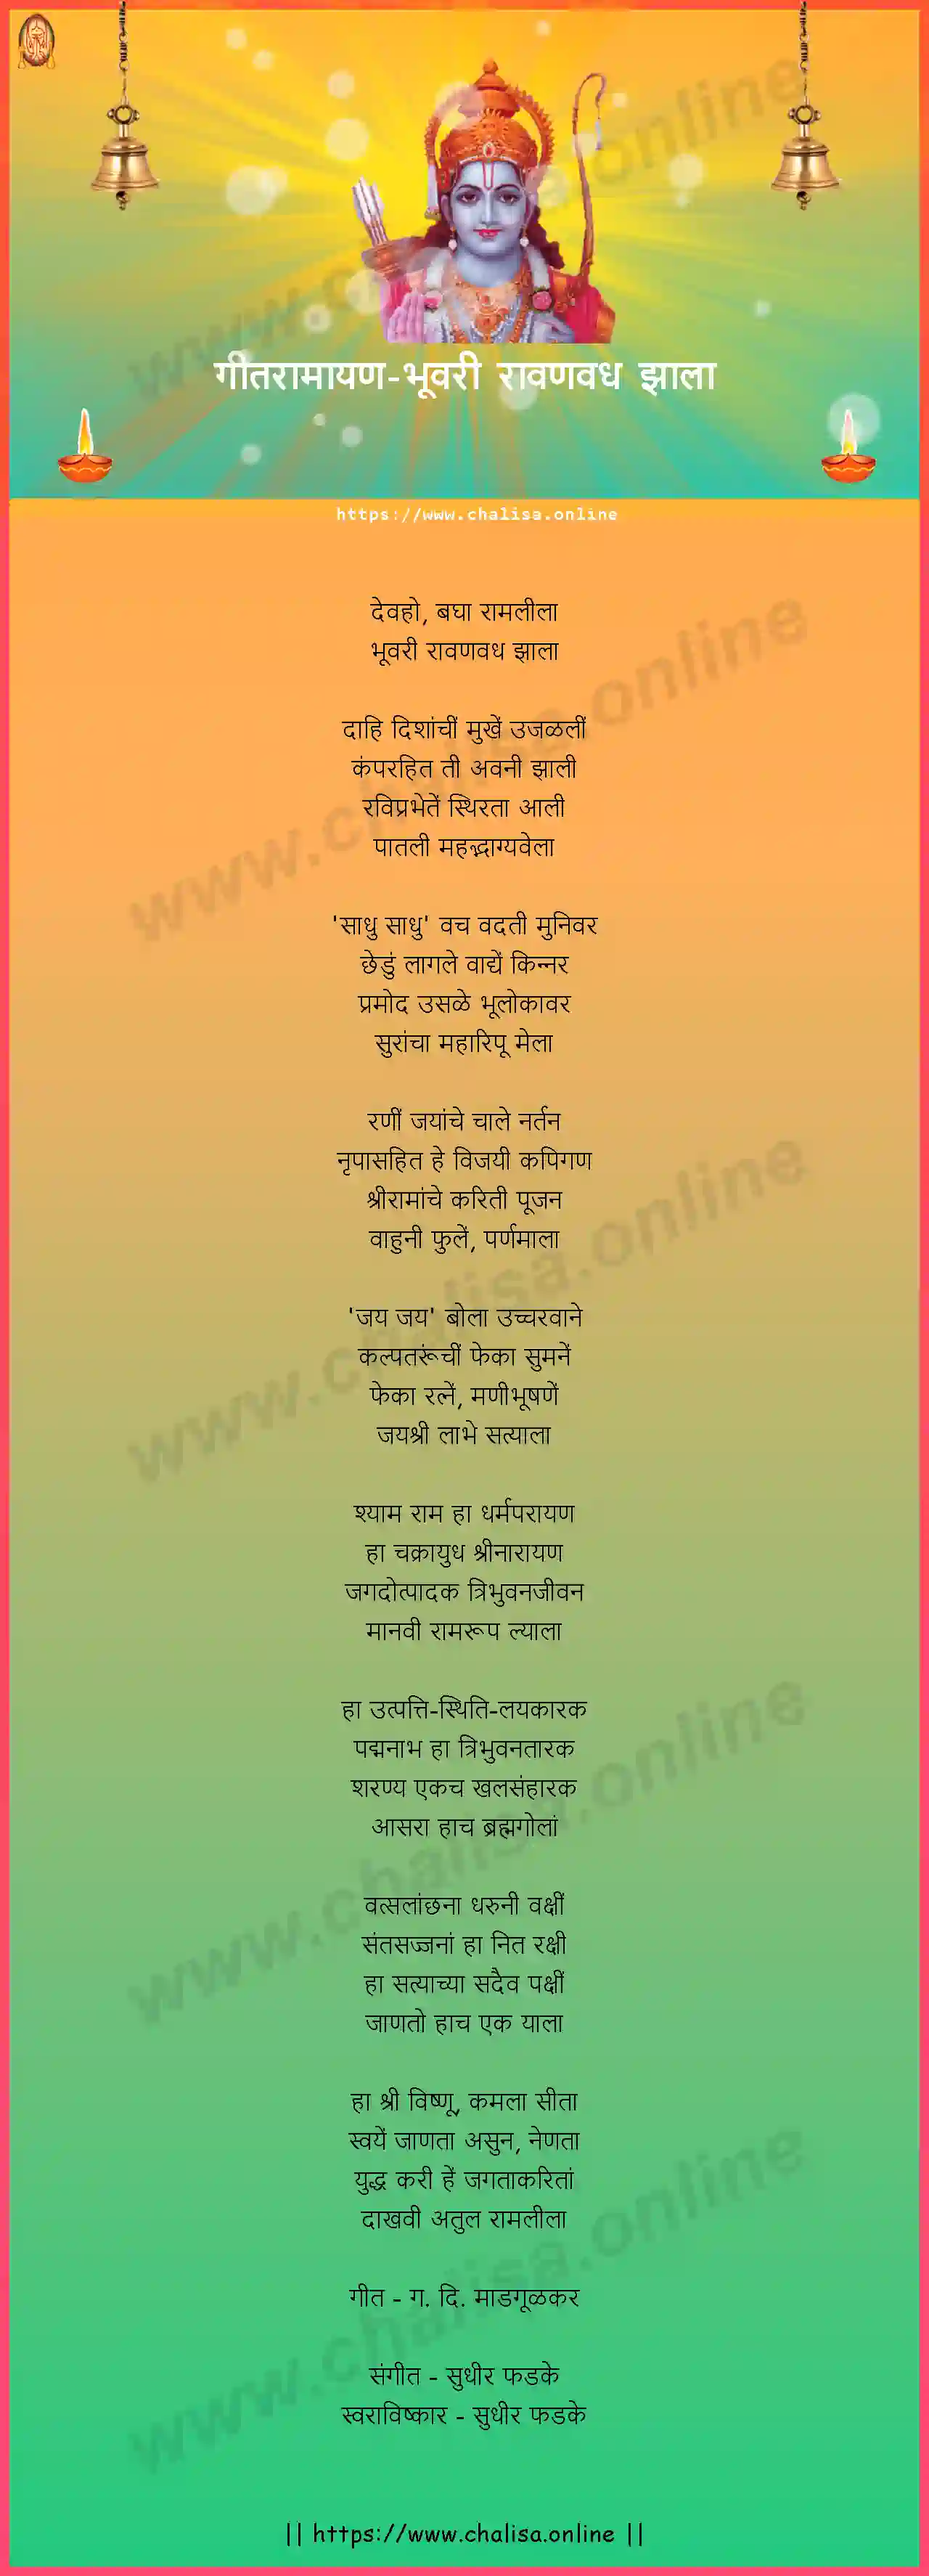 bhuvari-ravan-vadha-jhala-geet-ramayan-marathi-lyrics-download